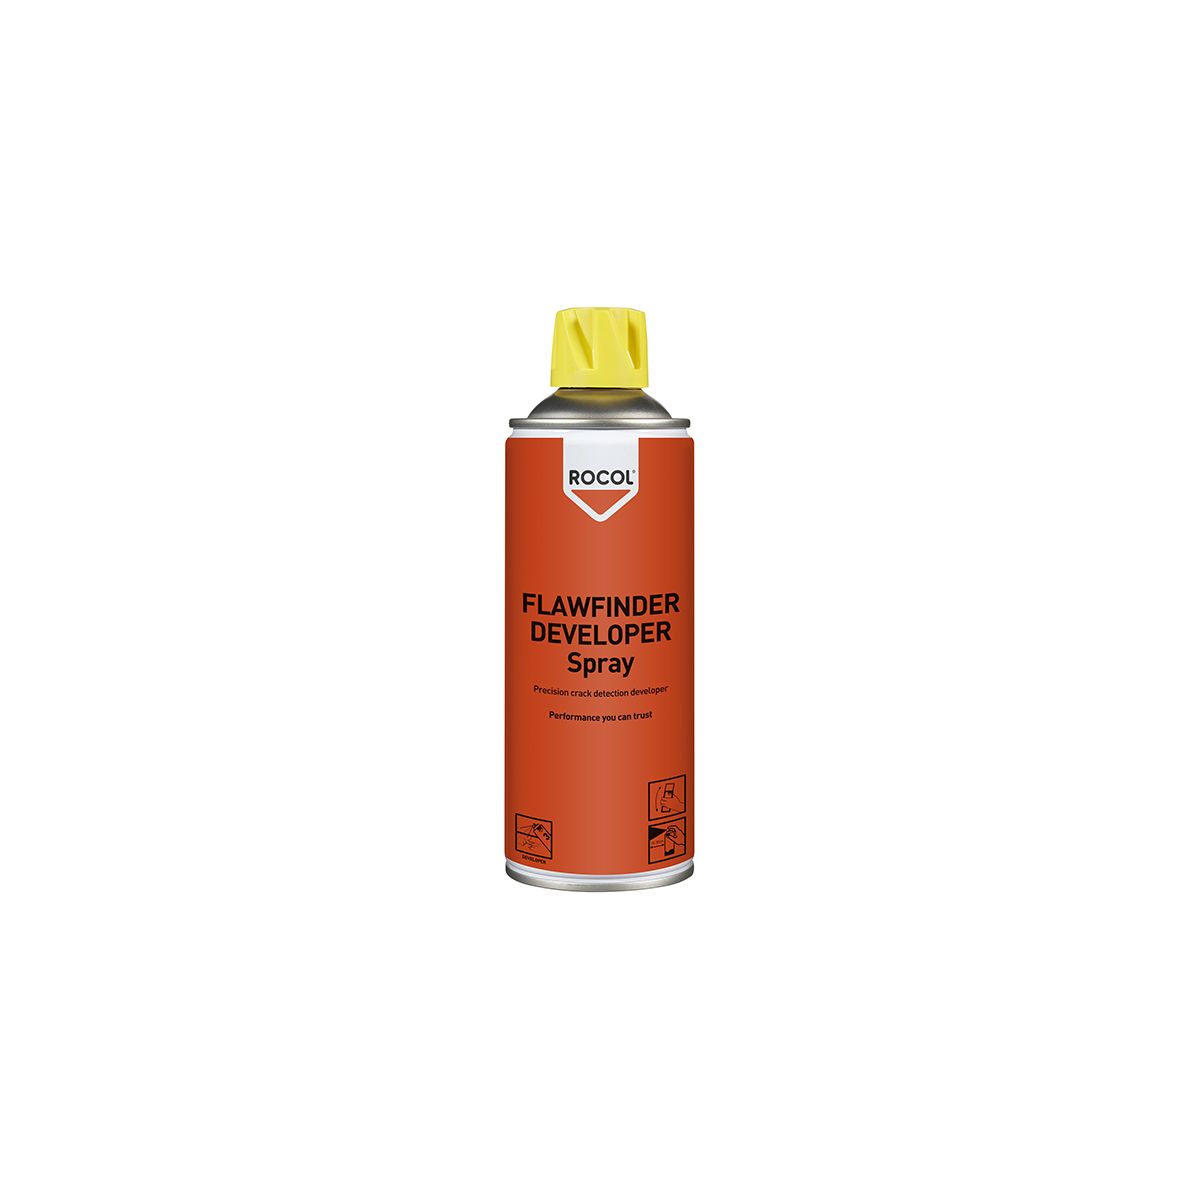 Rocol Leak & Flaw Detector Spray, Developer, 400ml, Aerosol